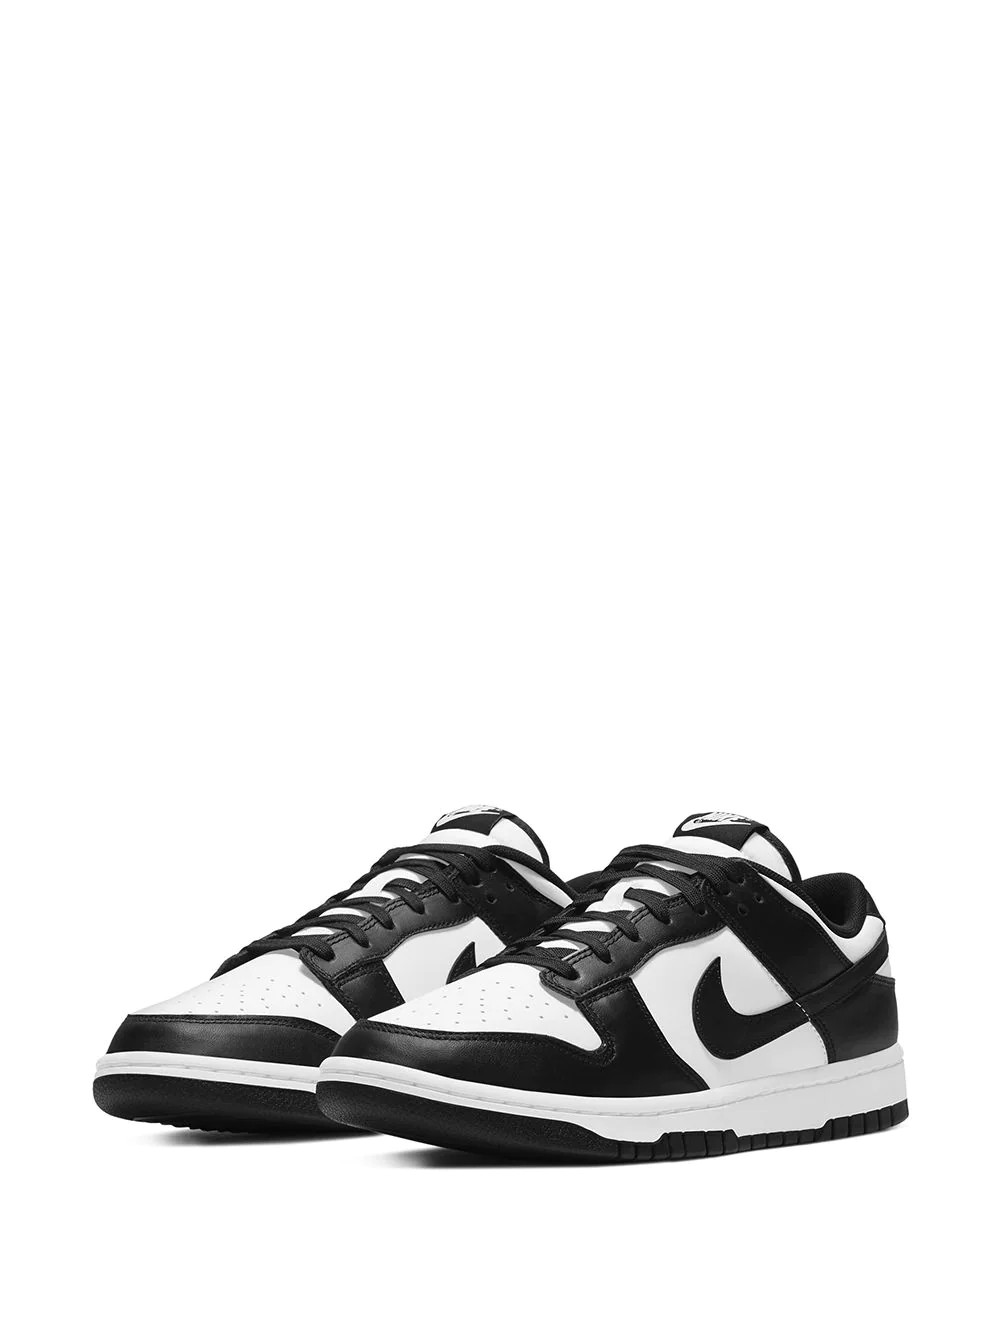 Nike Dunk Low Retro Black / White